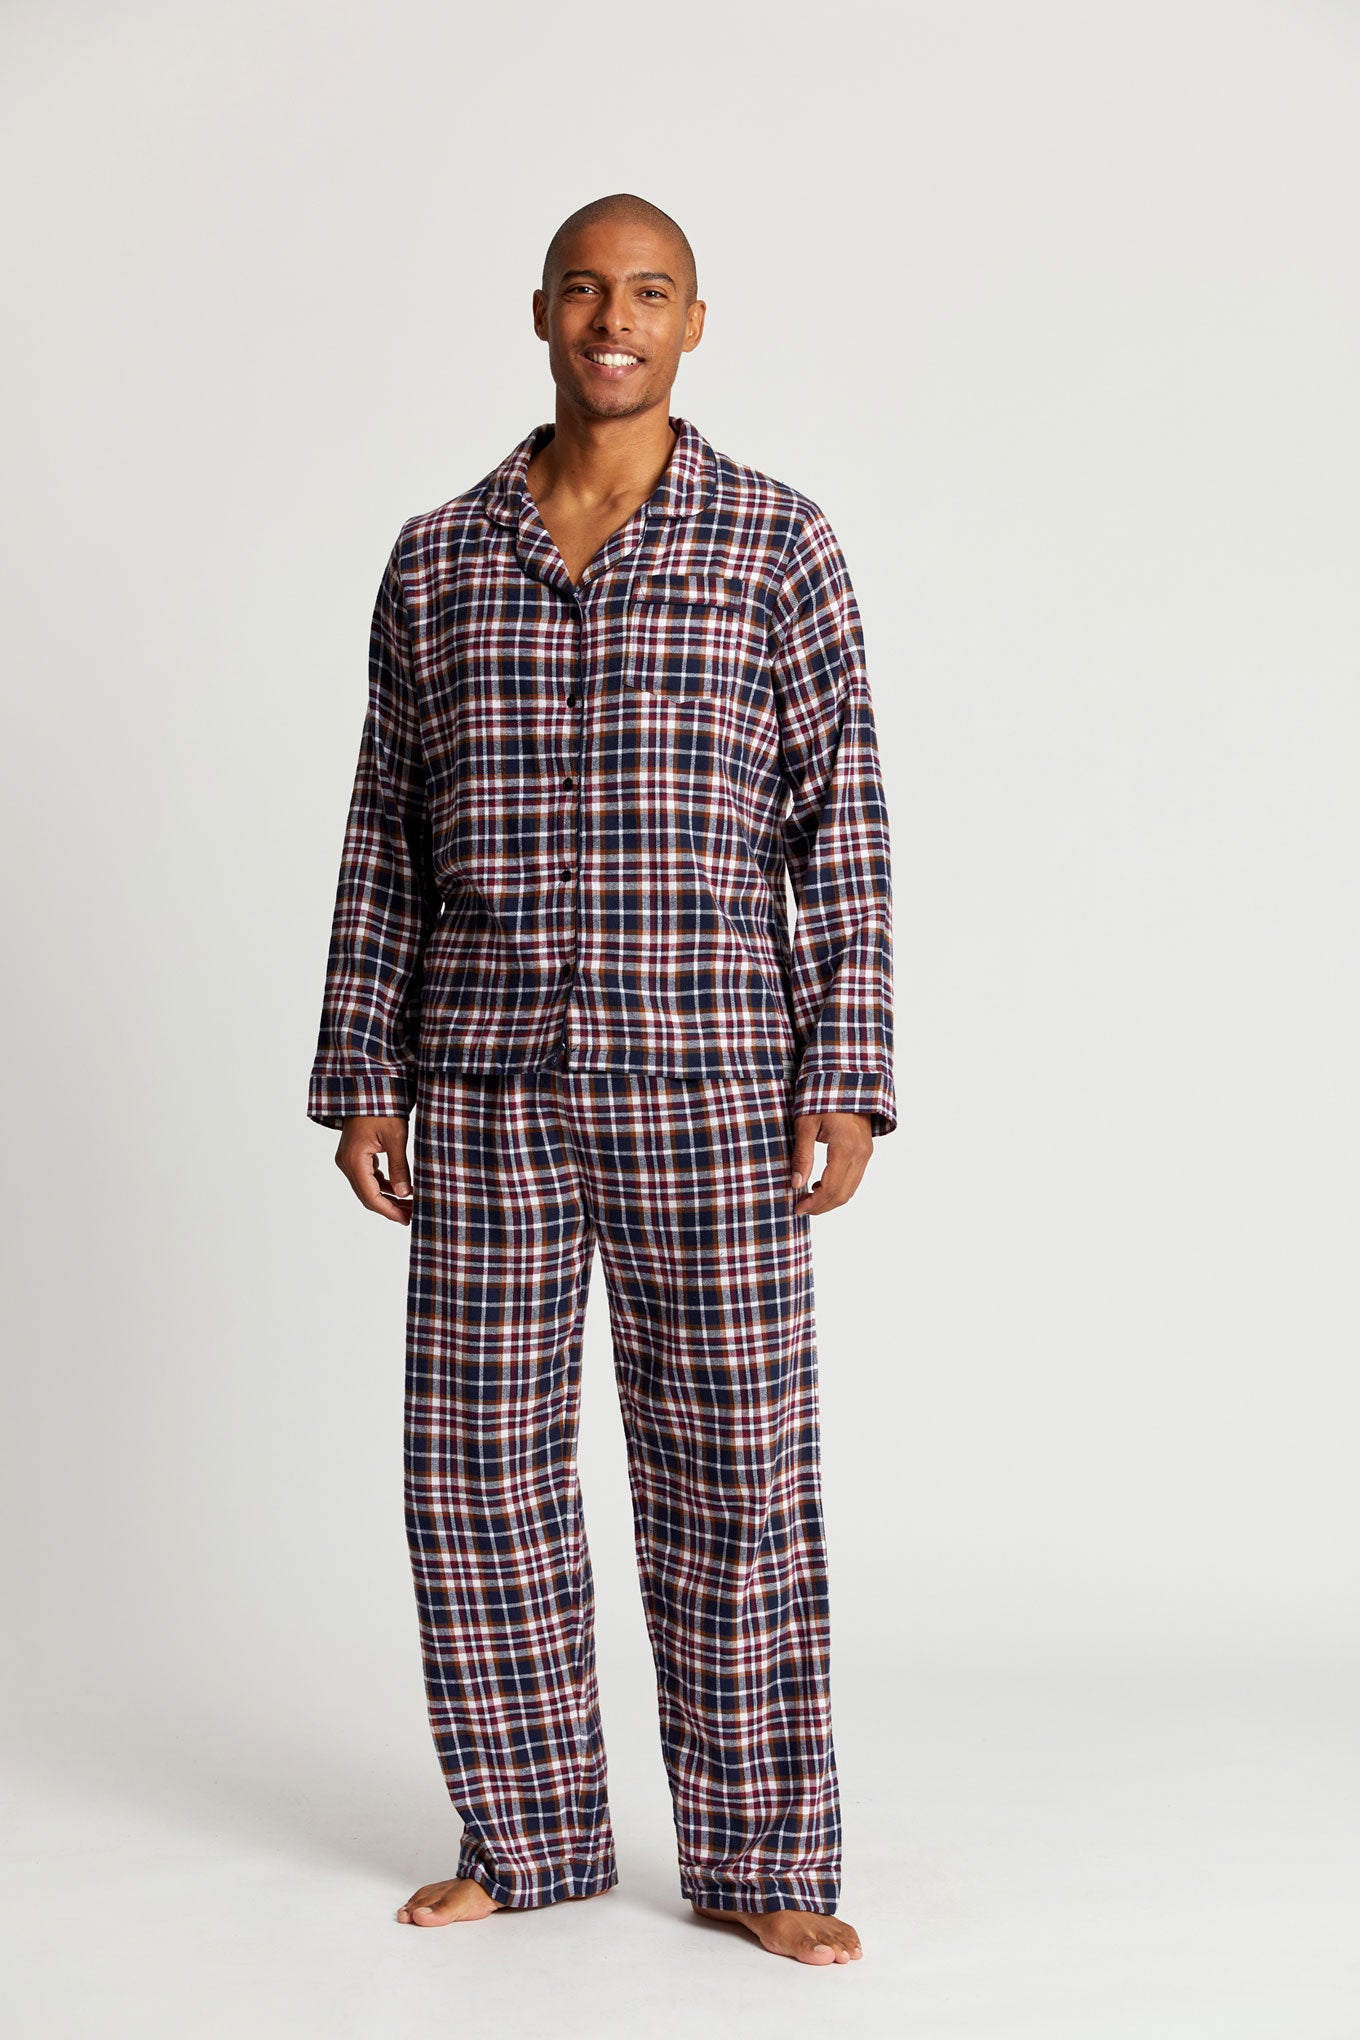 Buy Pajamas for Men, Mens Pyjamas Online